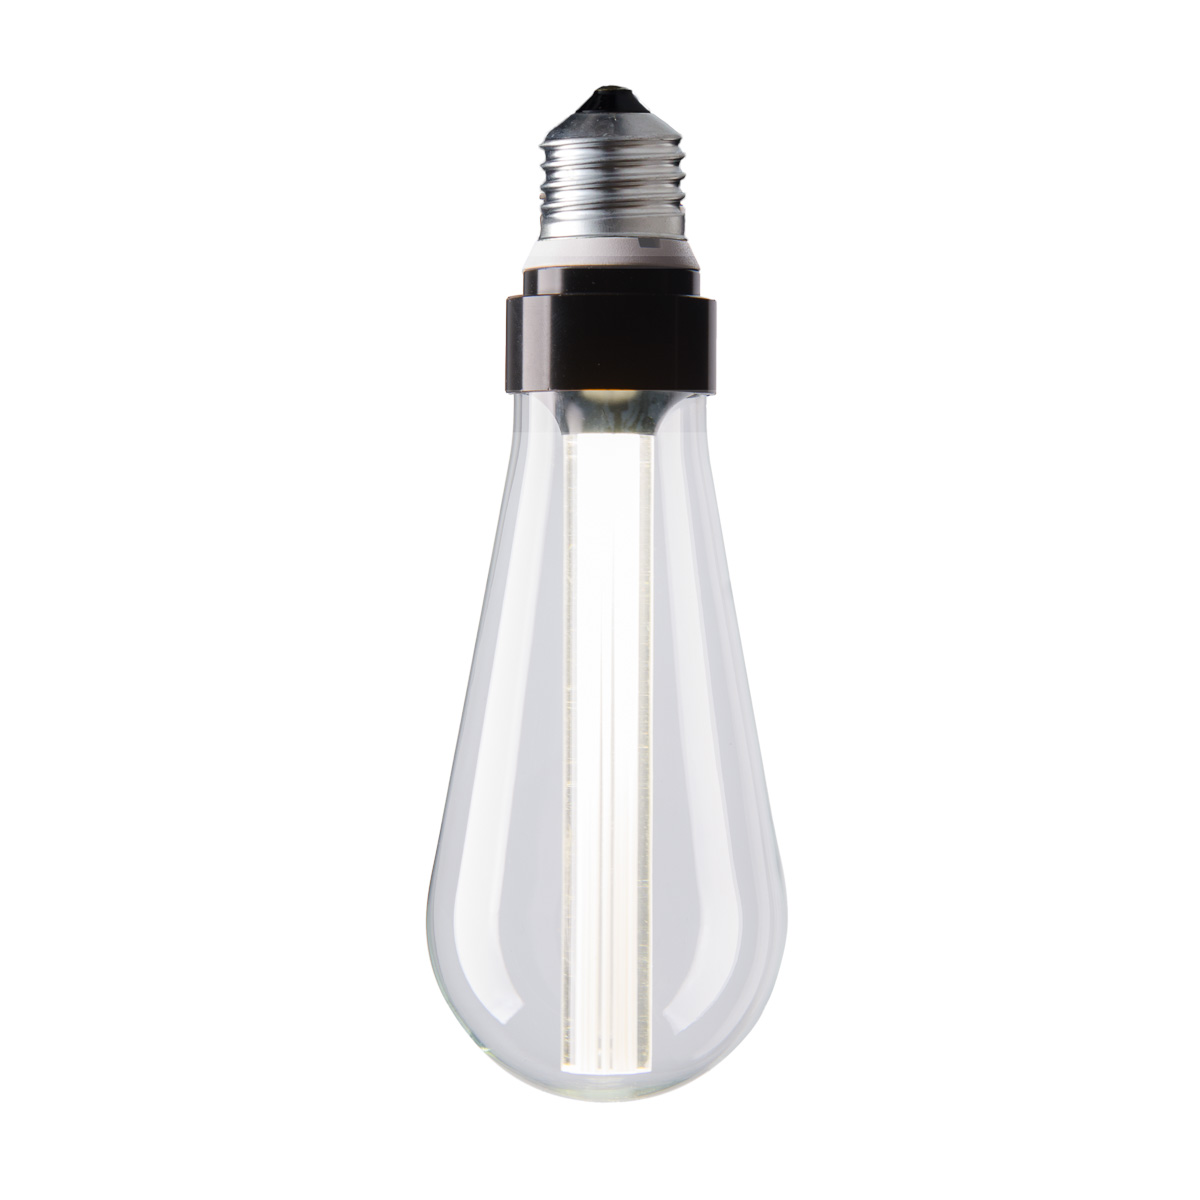 Żarówka dekoracyjna Edison ST 64 LED Glow Stick - White / Transparent